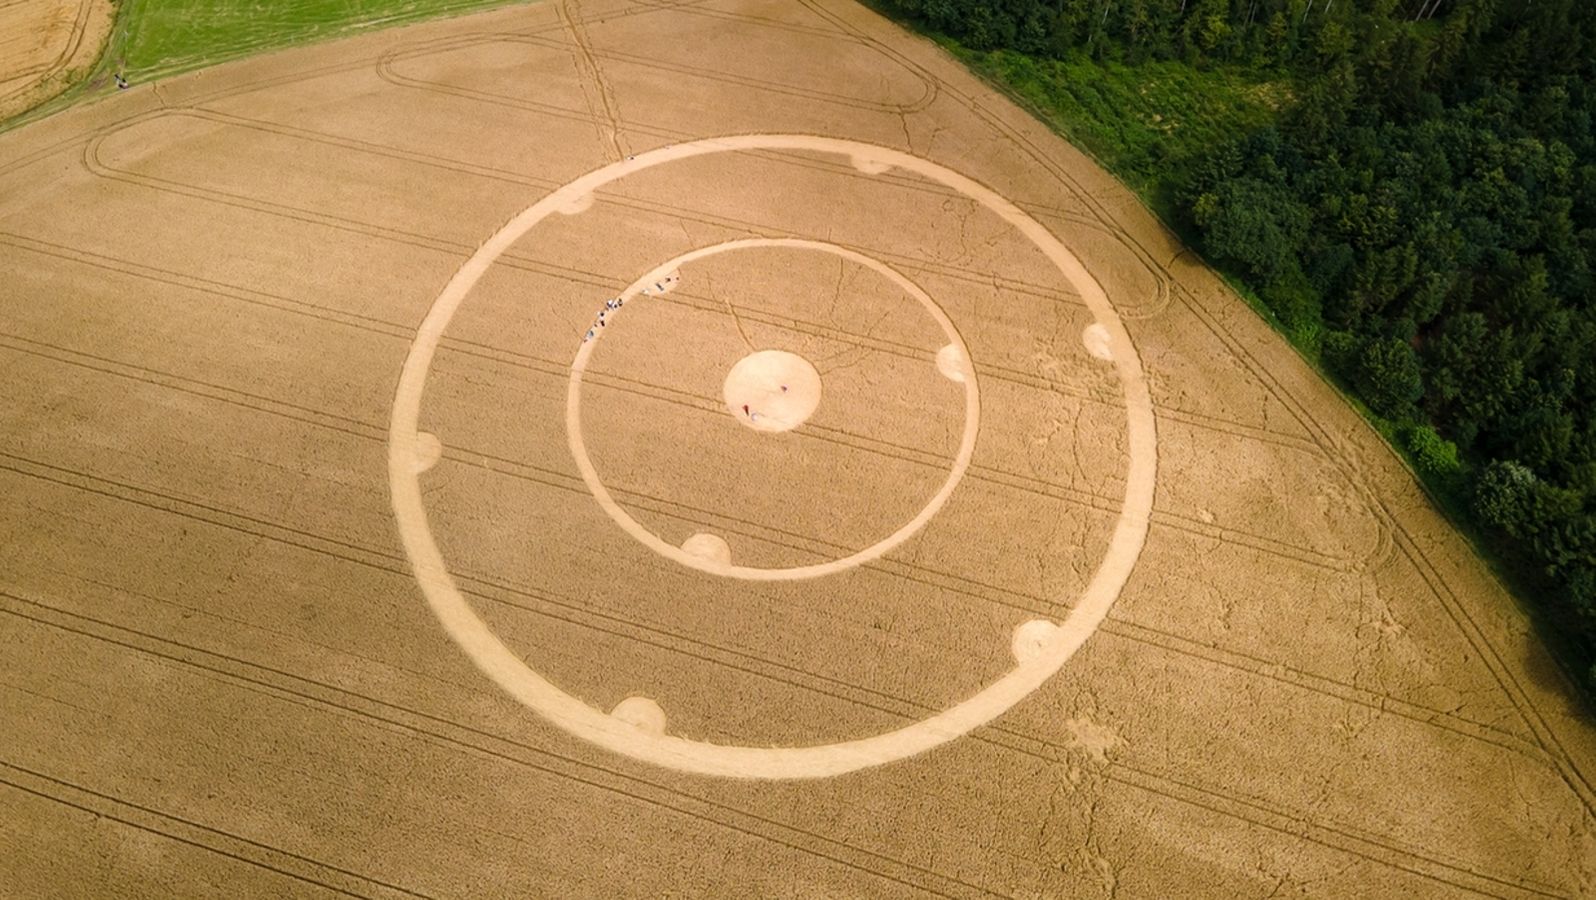 Crop circles: natural phenomenon, myth or man-made?

